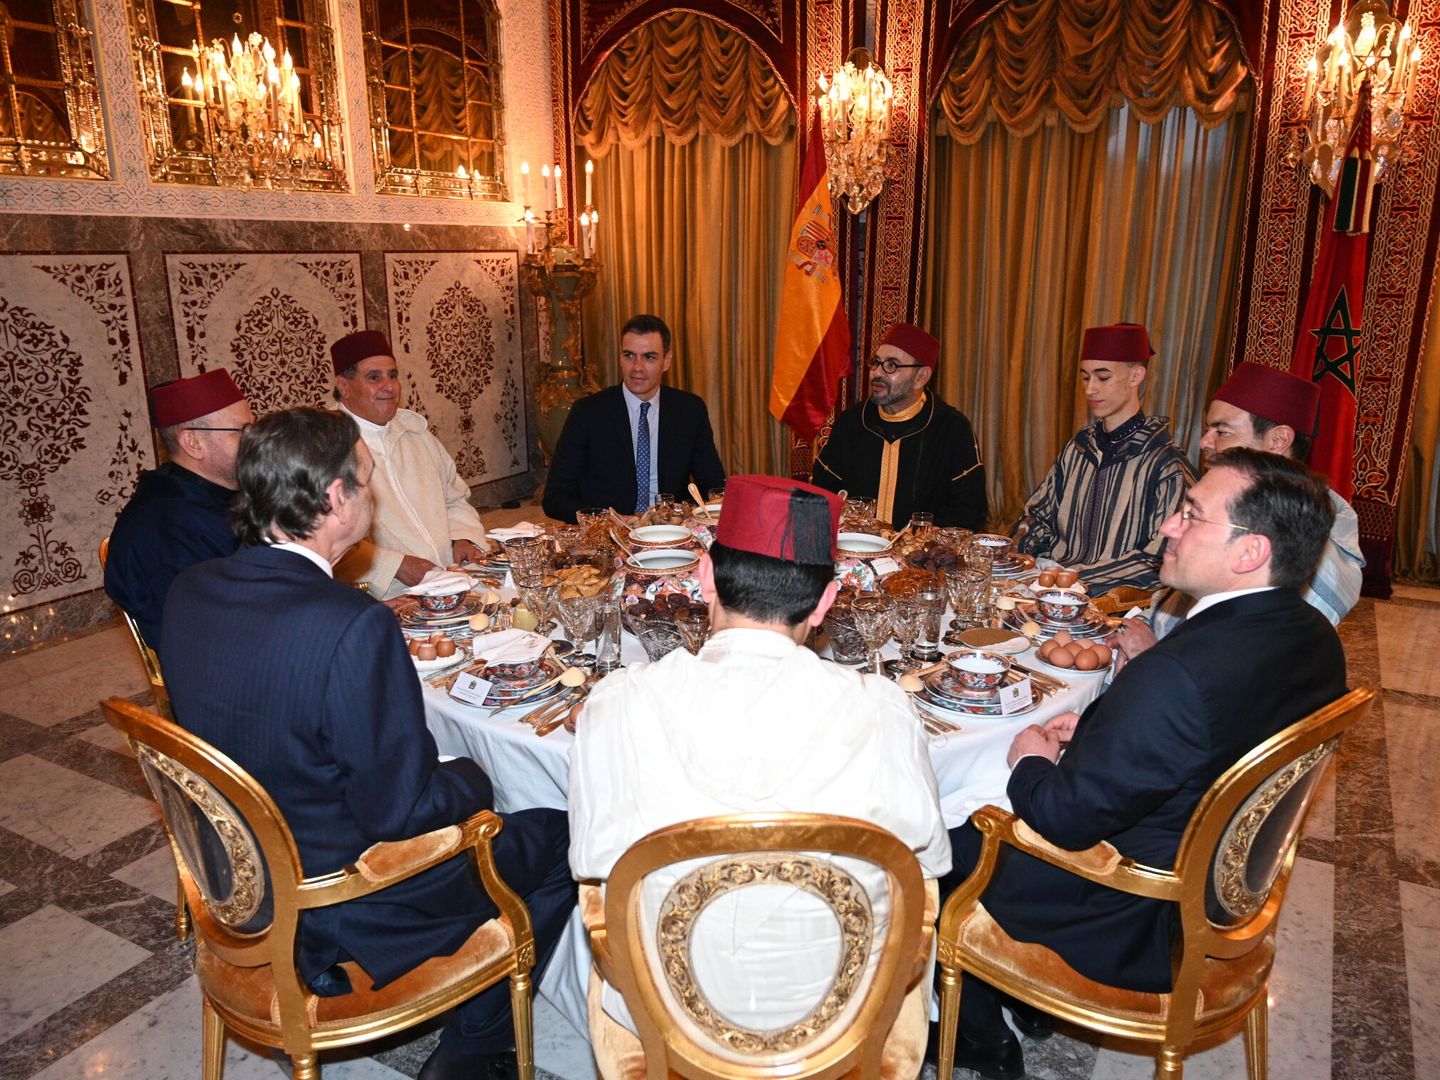 Mohamed VI de Marruecos (4-d) ha presidido este jueves en Rabat el 'iftar'(comida de ruptura de ayuno) al que invitó al jefe de Gobierno español, Pedro Sánchez (4-i). (EFE/Presidencia del Gobierno)